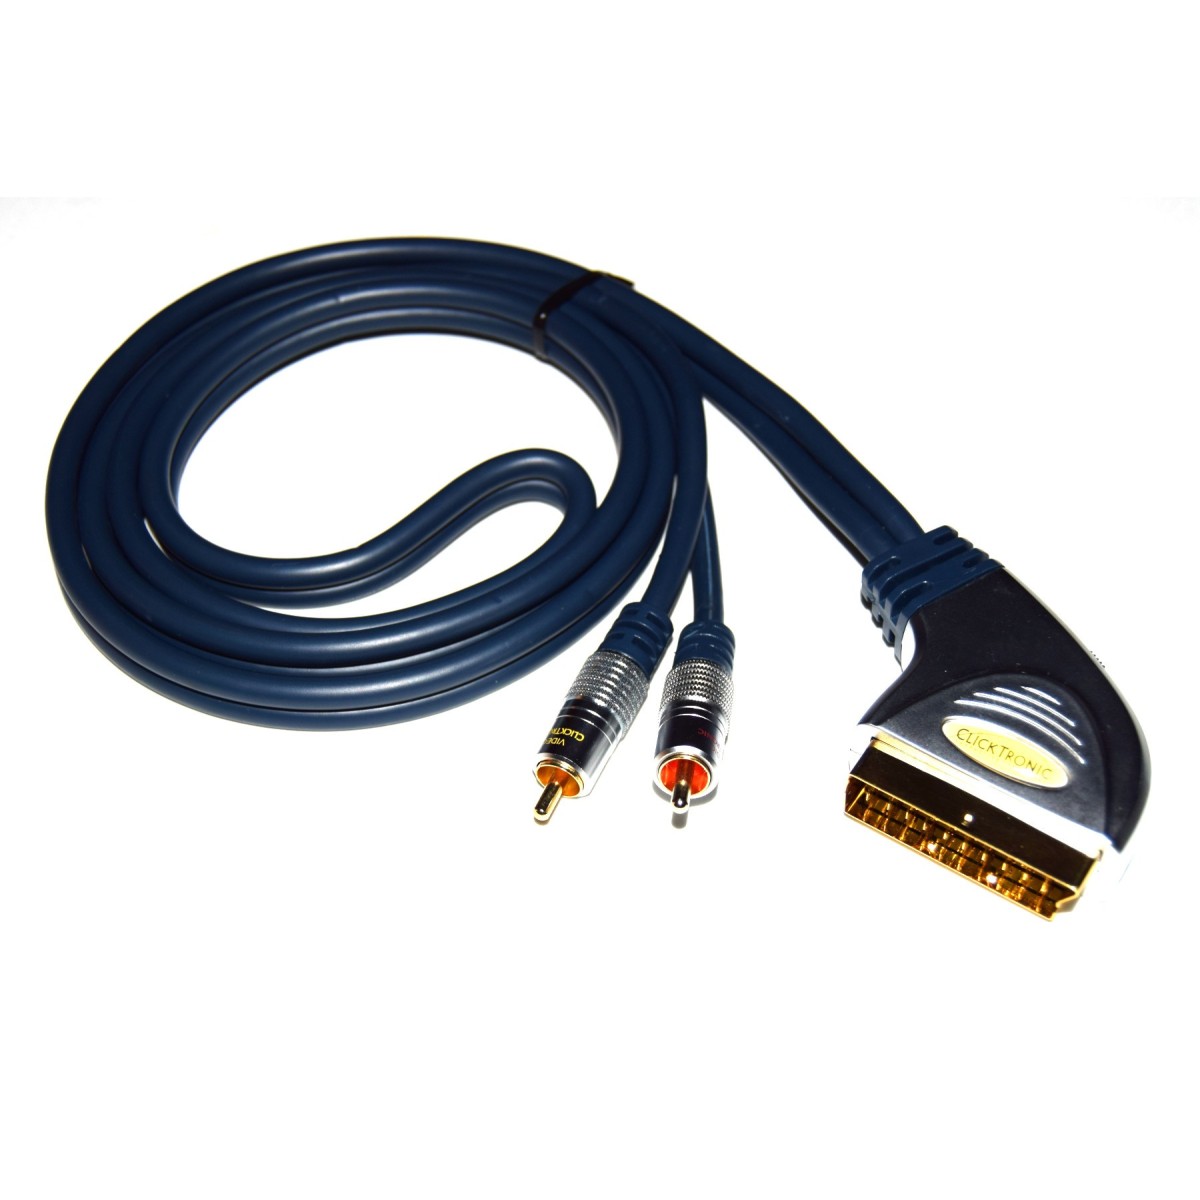 Cable euroconector AV estéreo estándar Premium